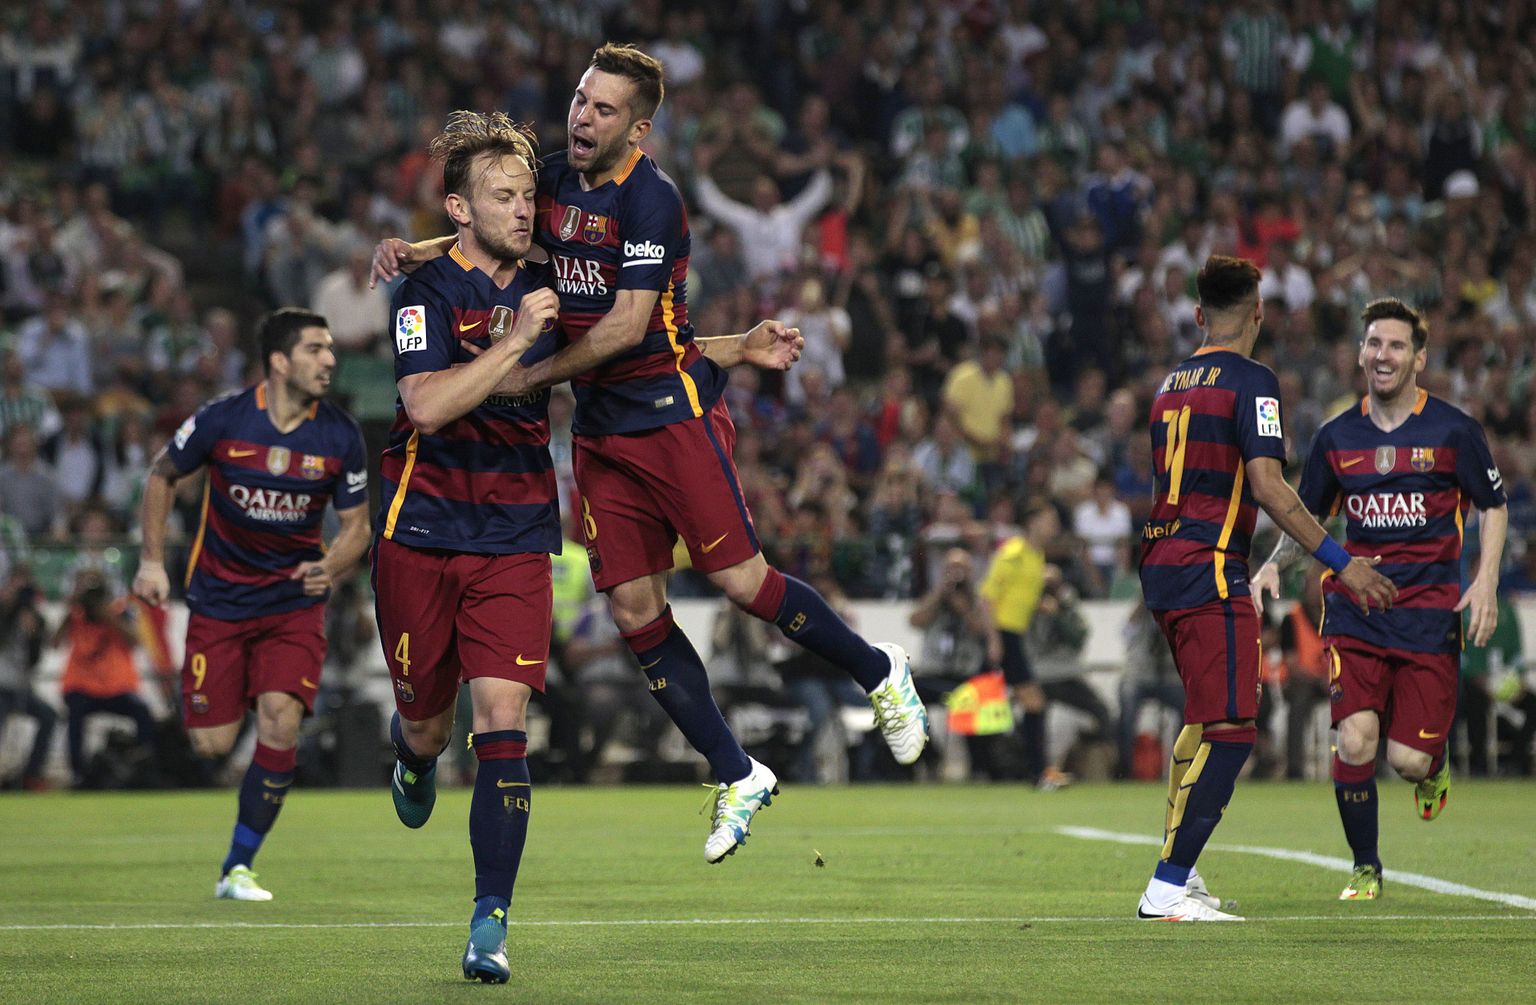 Barcelona mängijad lõi Real Betisi võrku kaks palli ja teenisid kolm punkti.